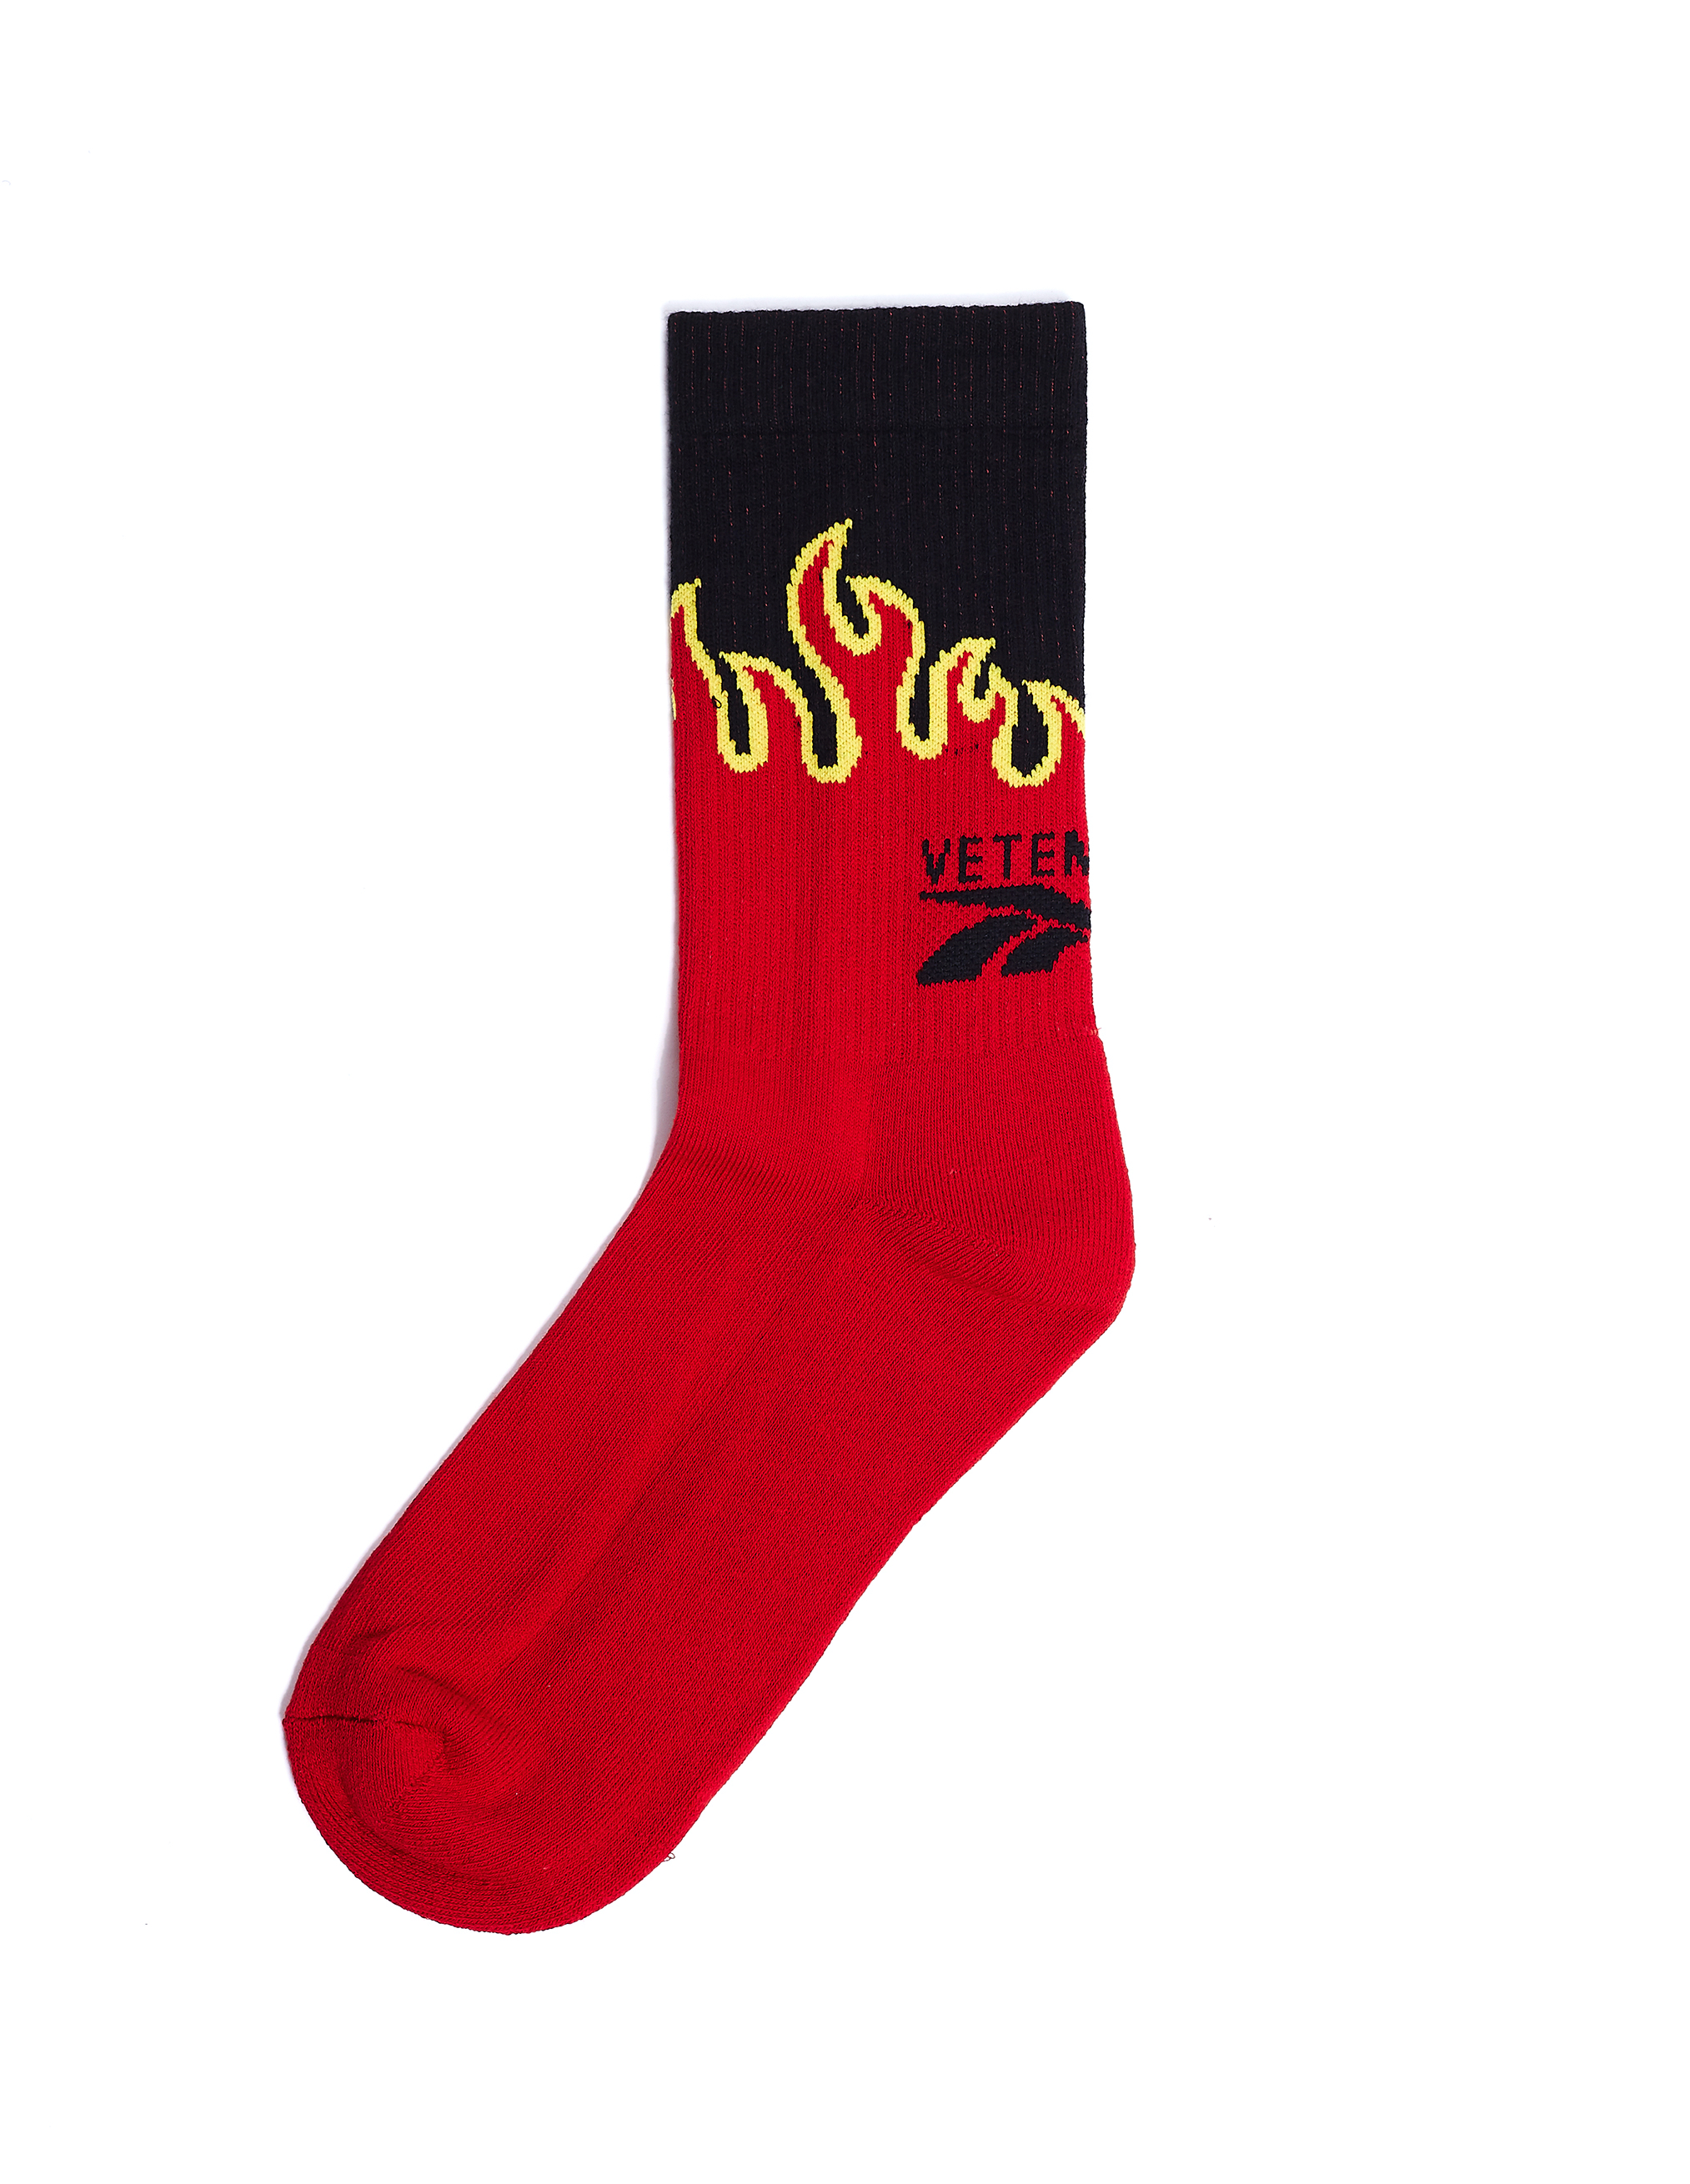 Черные носки с пламенем - Vetements SS20HO004/mlt Фото 2